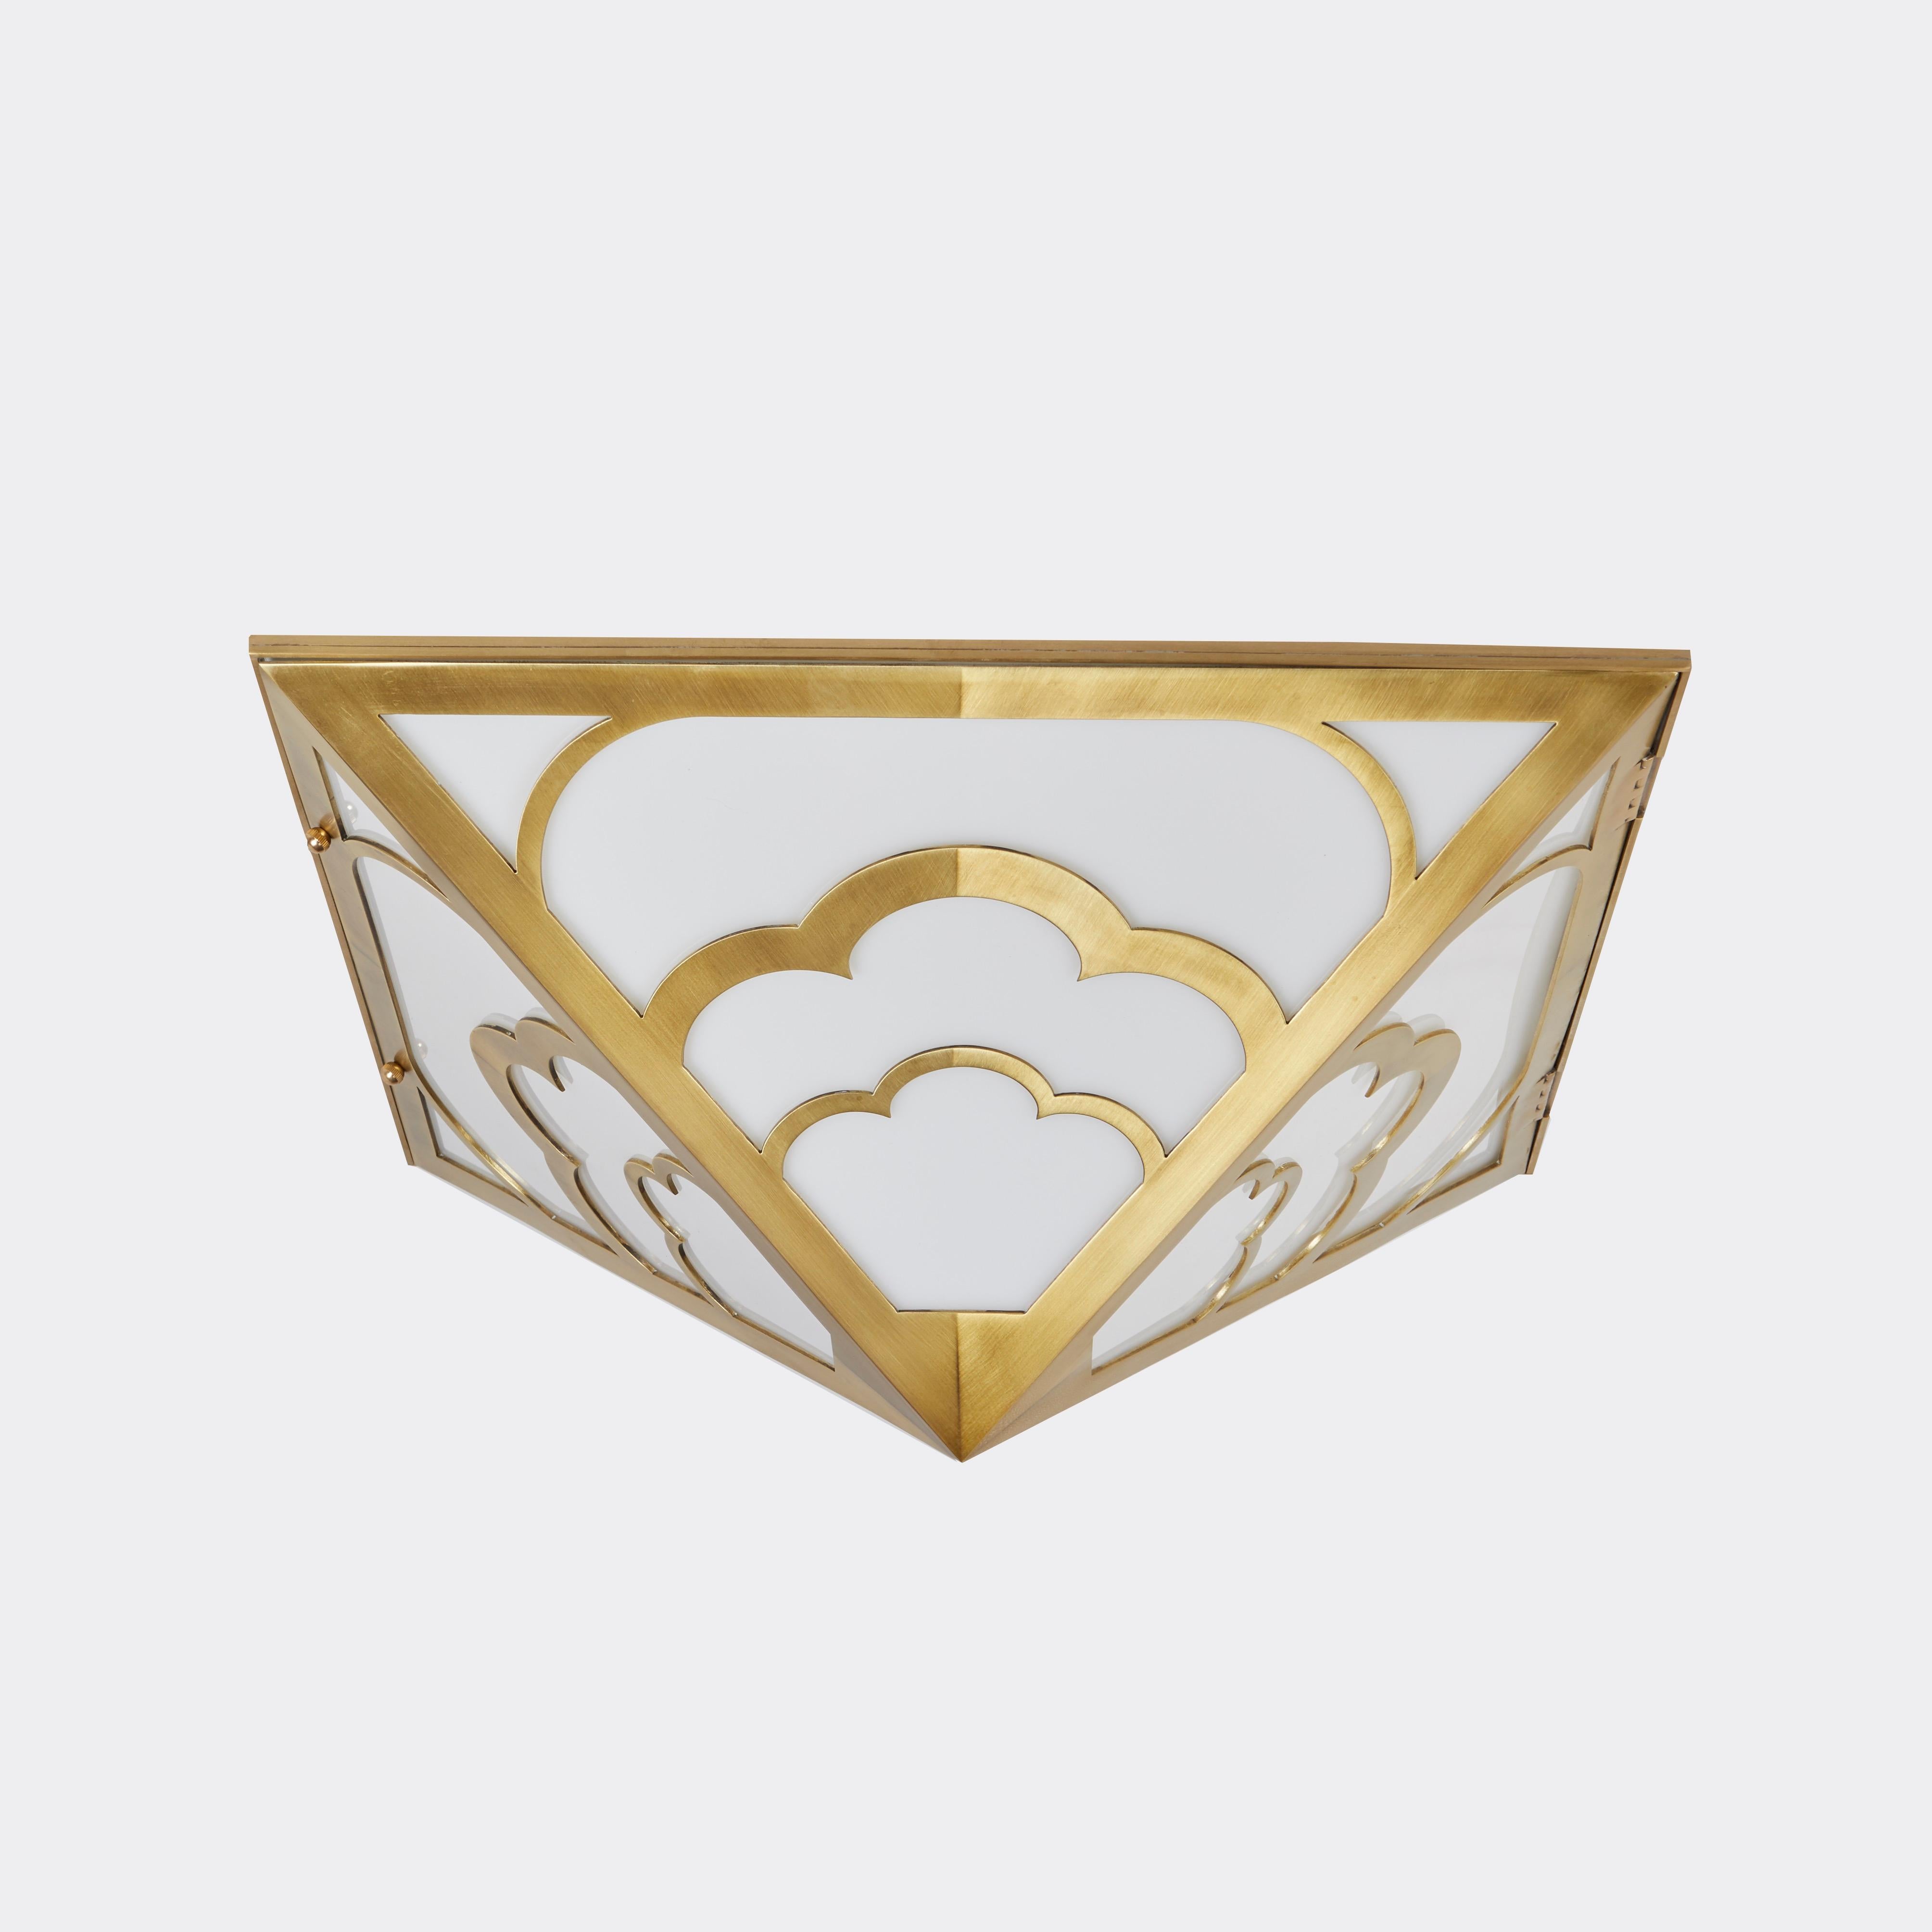 Die Nuages Deco Flush Mount, eine individuell gestaltbare Leuchte von David Duncan. Diese Deckenleuchte in Form einer umgekehrten Pyramide im Art-Déco-Stil zeichnet sich durch einen Rahmen mit geschwungenen Bögen aus, der mundgeblasenes